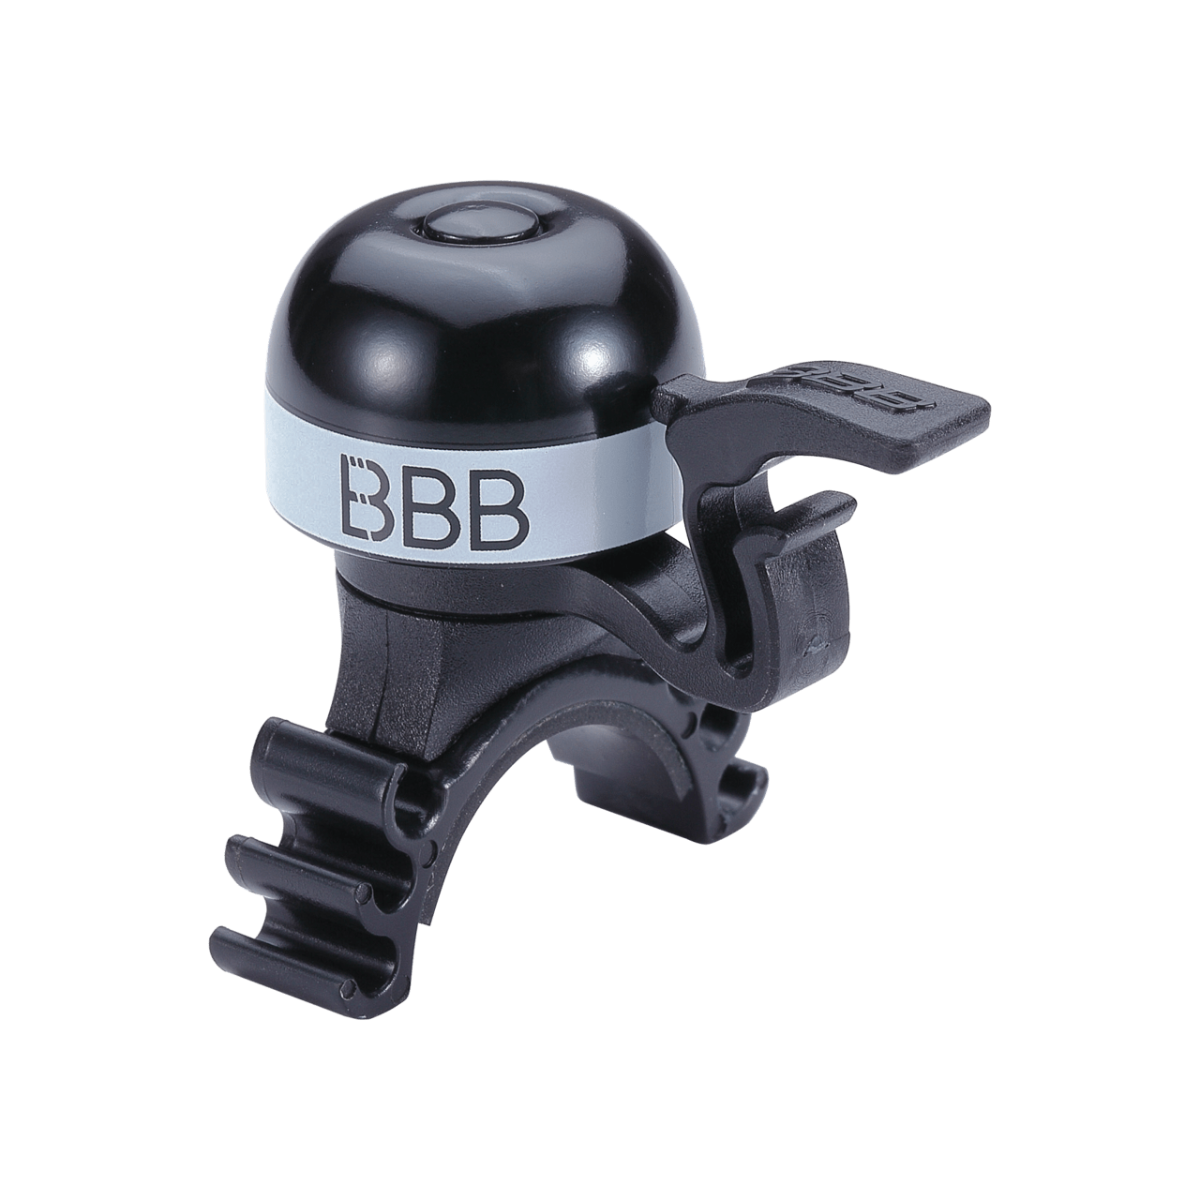 Zvans BBB BBB-16 bike bell minibell black/white